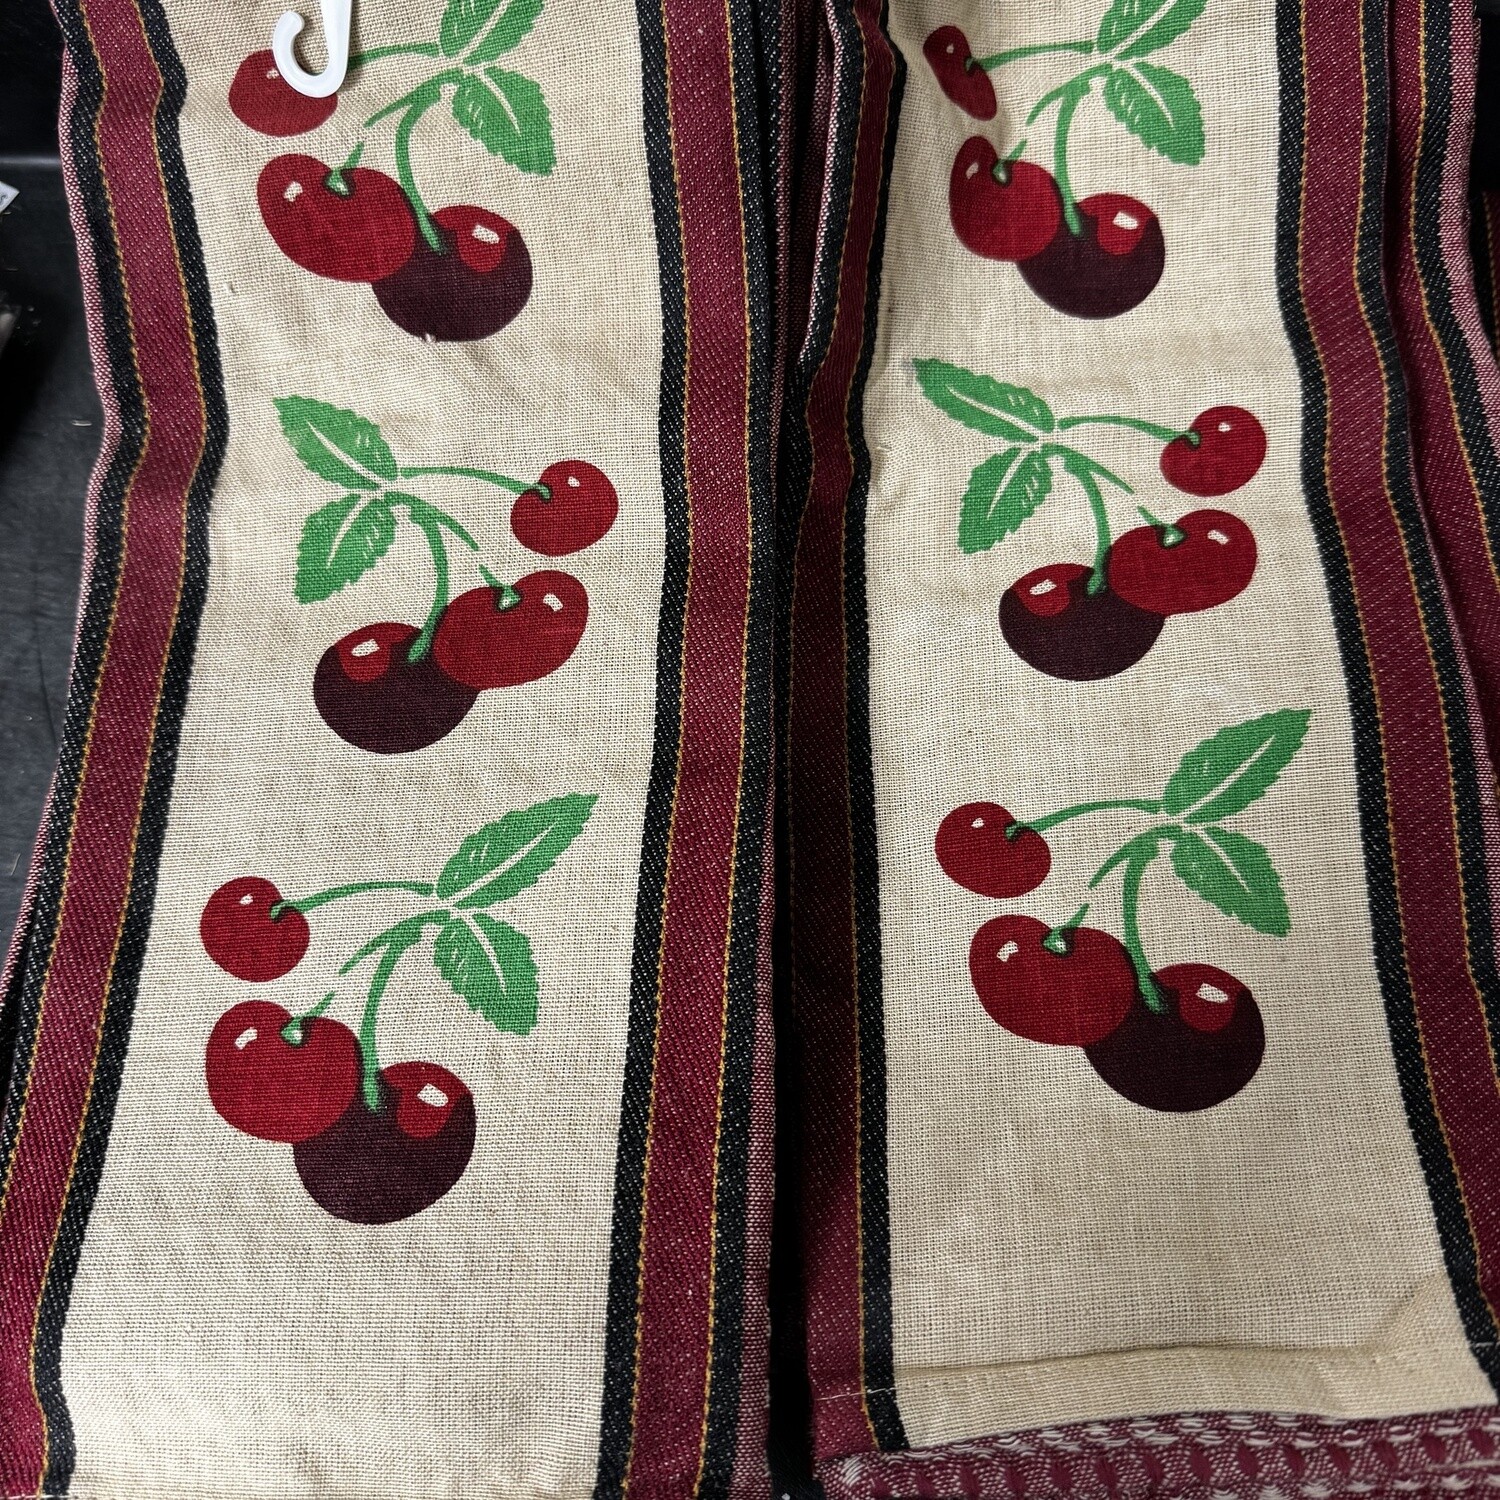 Bing Cherry Kitchen Towel